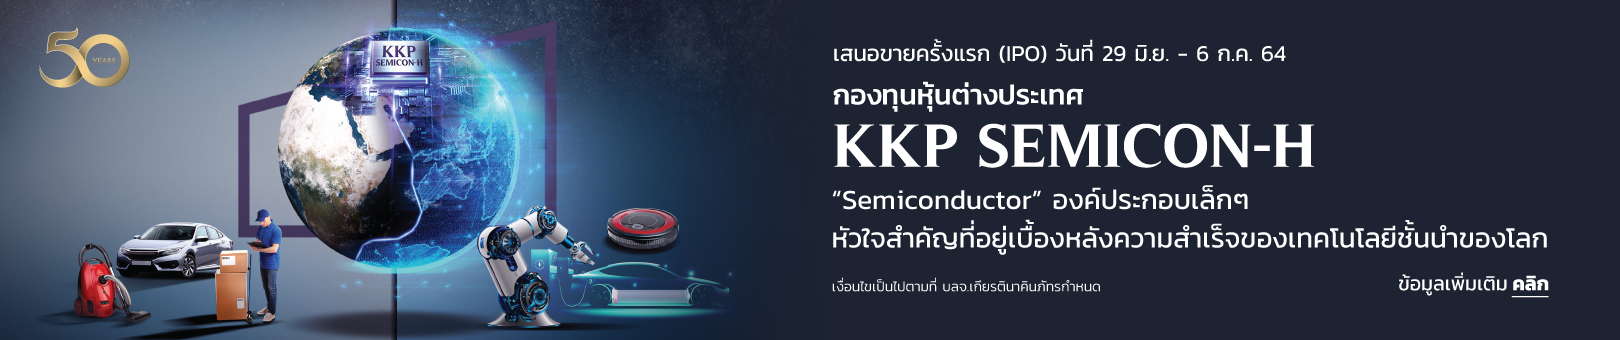 KKP-Semicon-h-1620x340p